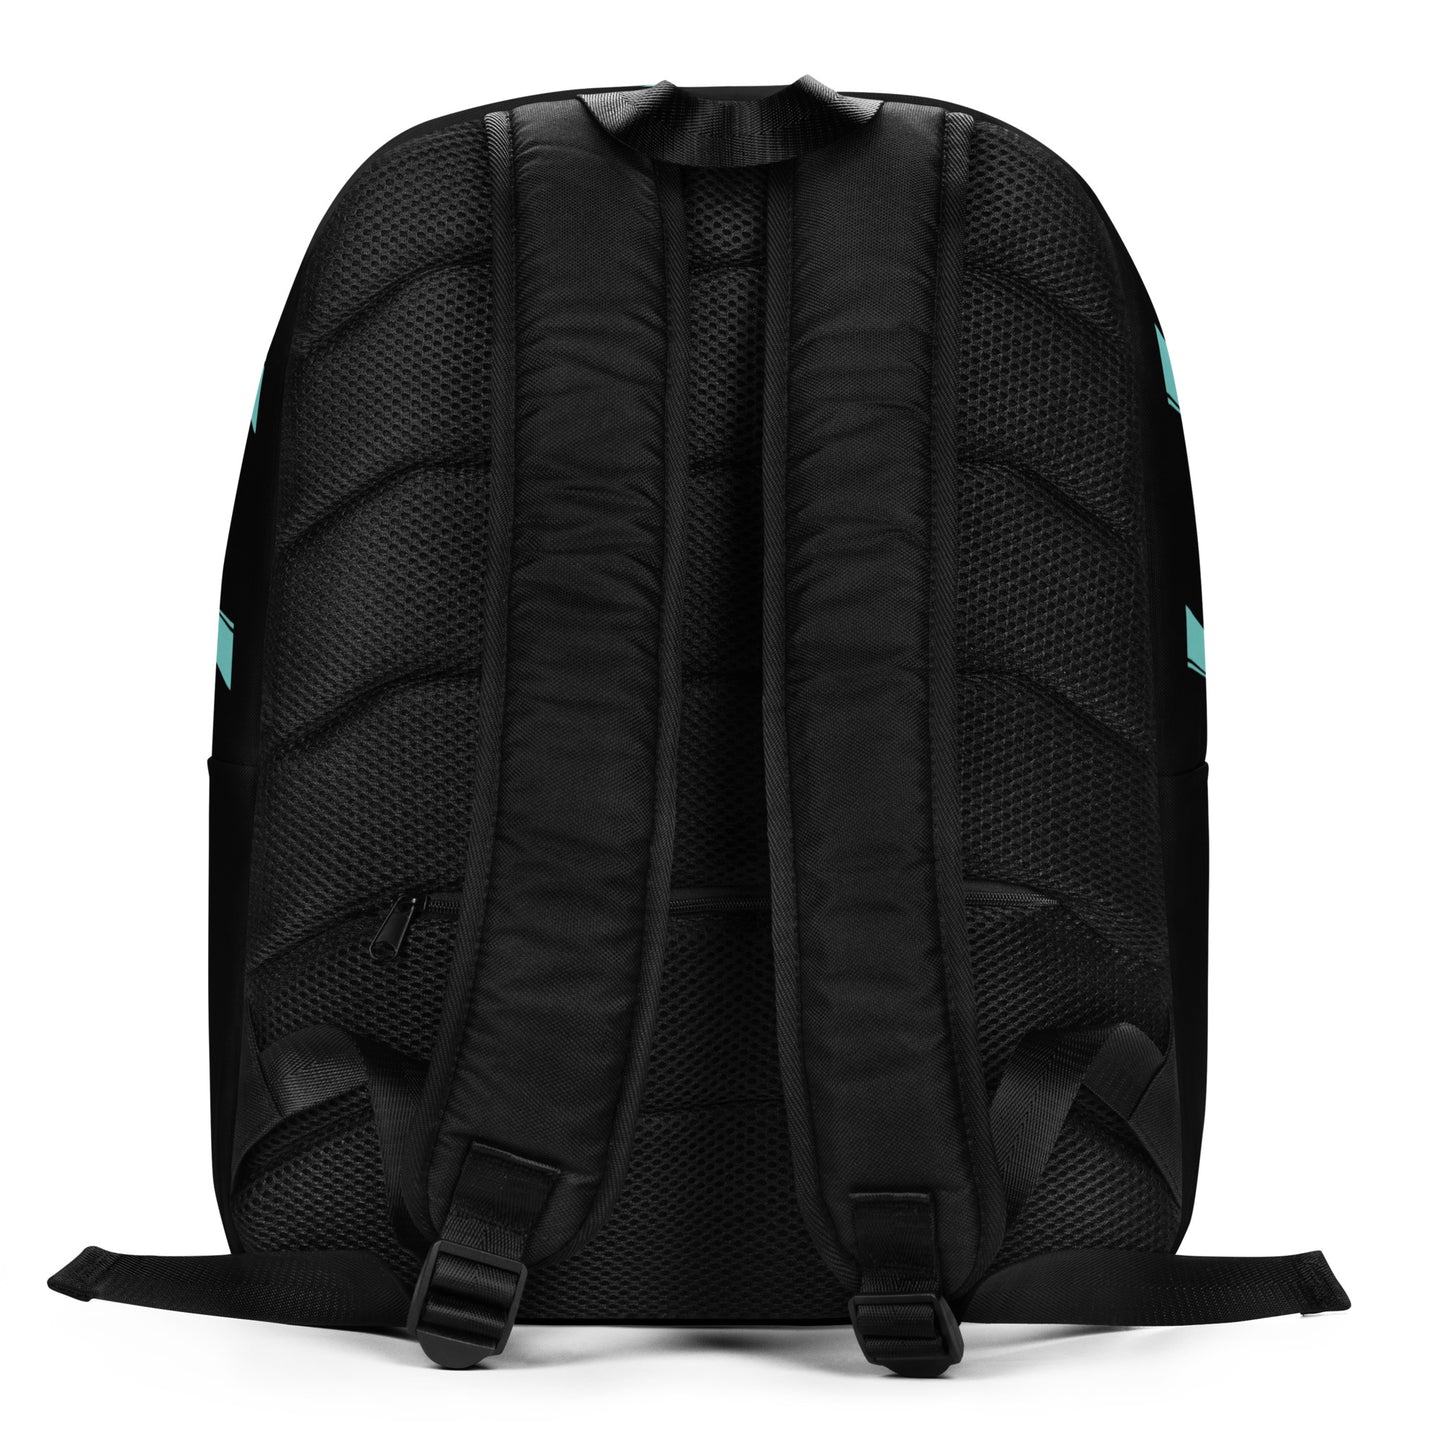 SVOLTA 9 Bolts Minimalist Backpack - Black and Aqua